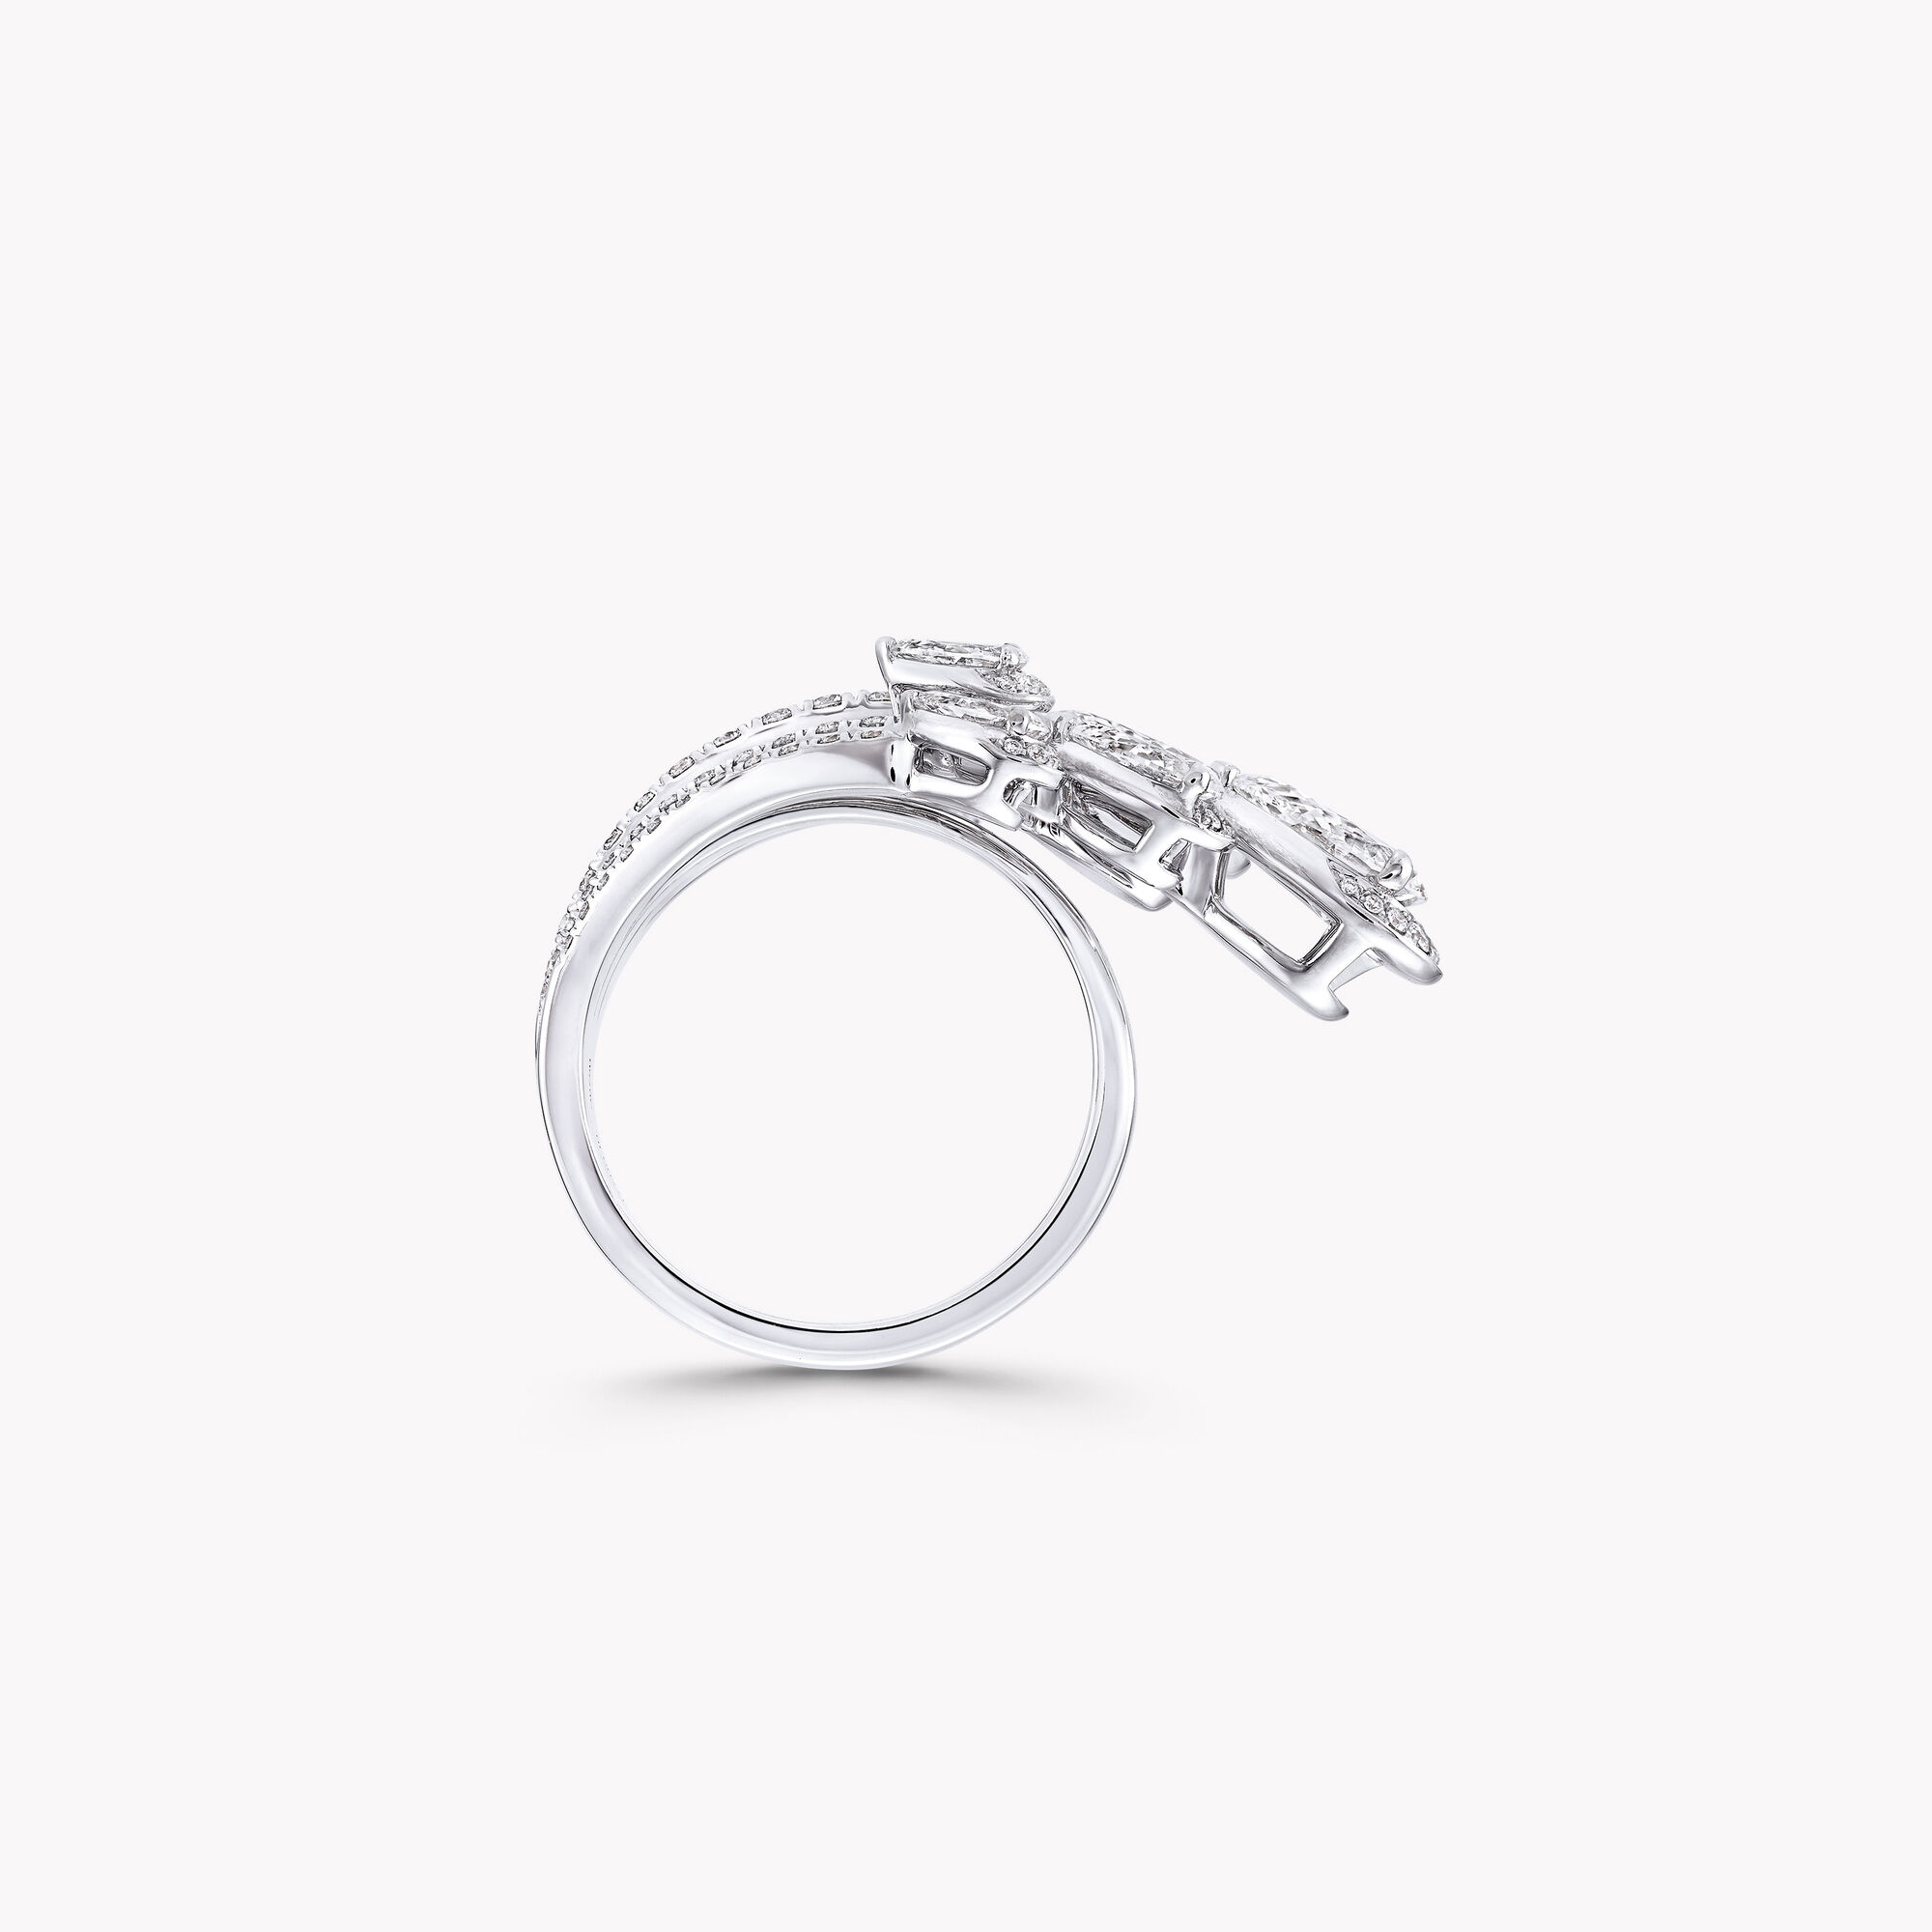 Louis Vuitton Empreinte Ring, White Gold and Diamonds Grey. Size 57